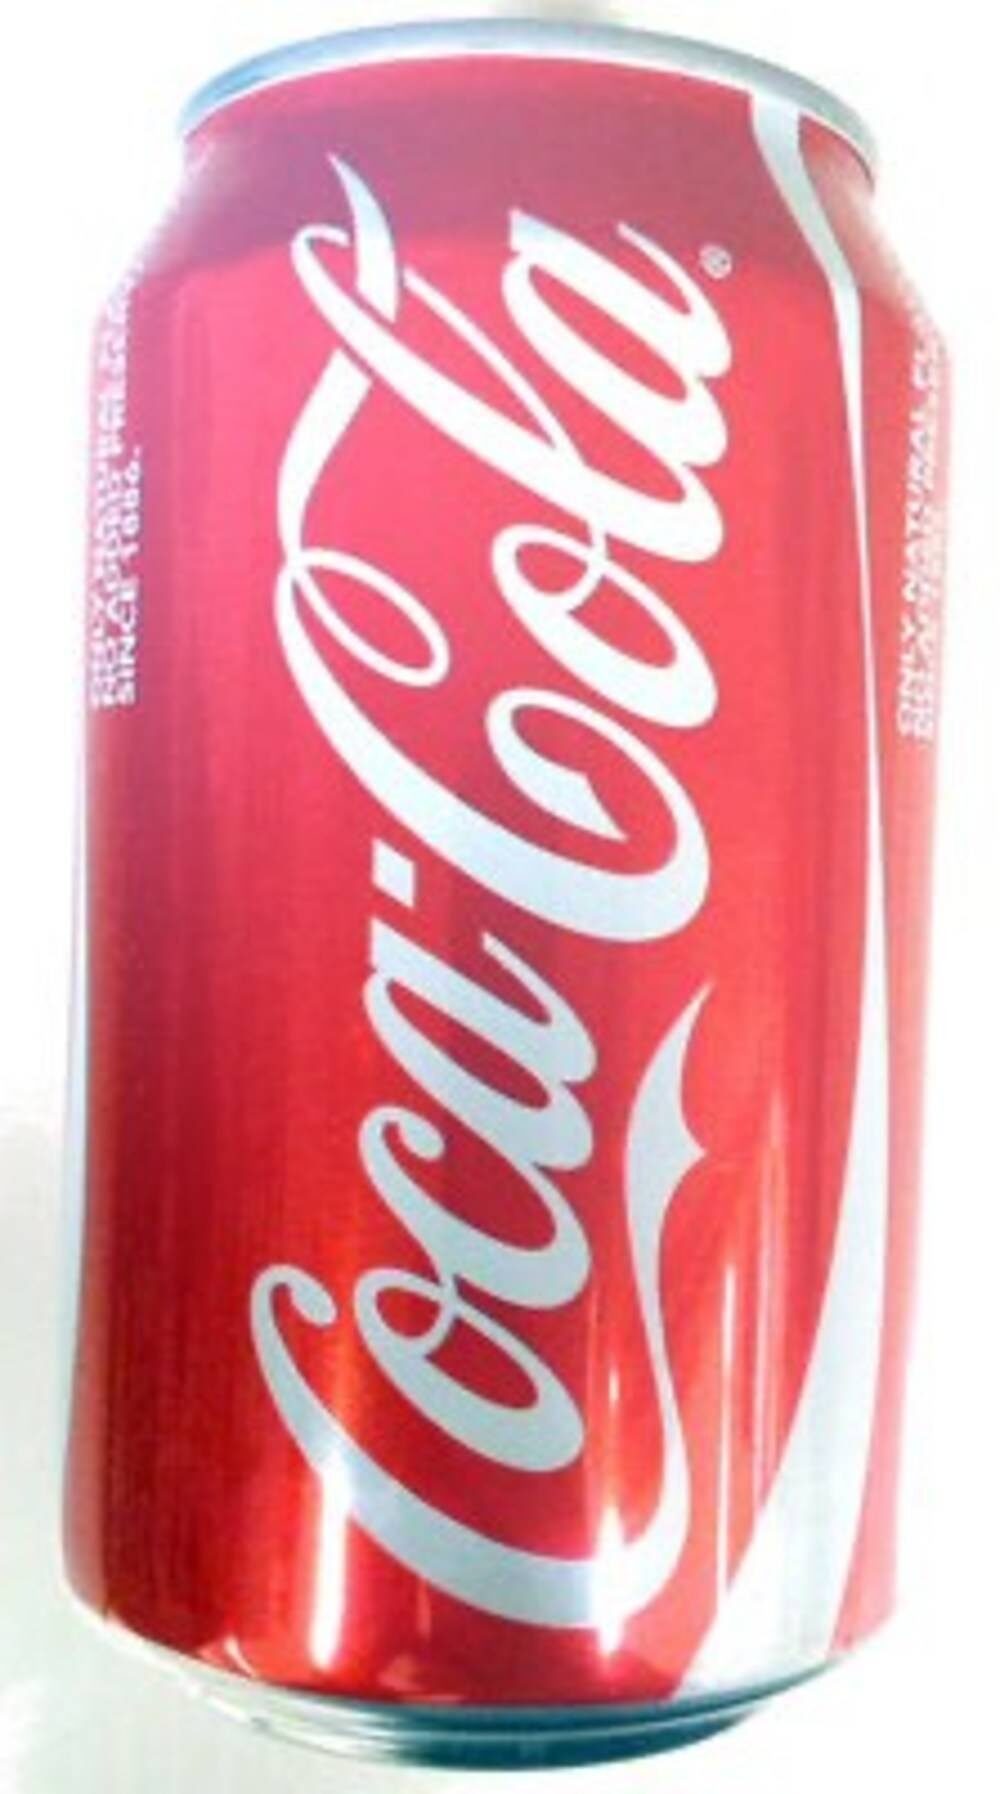 Coca-Cola en canette - Produkt - fr